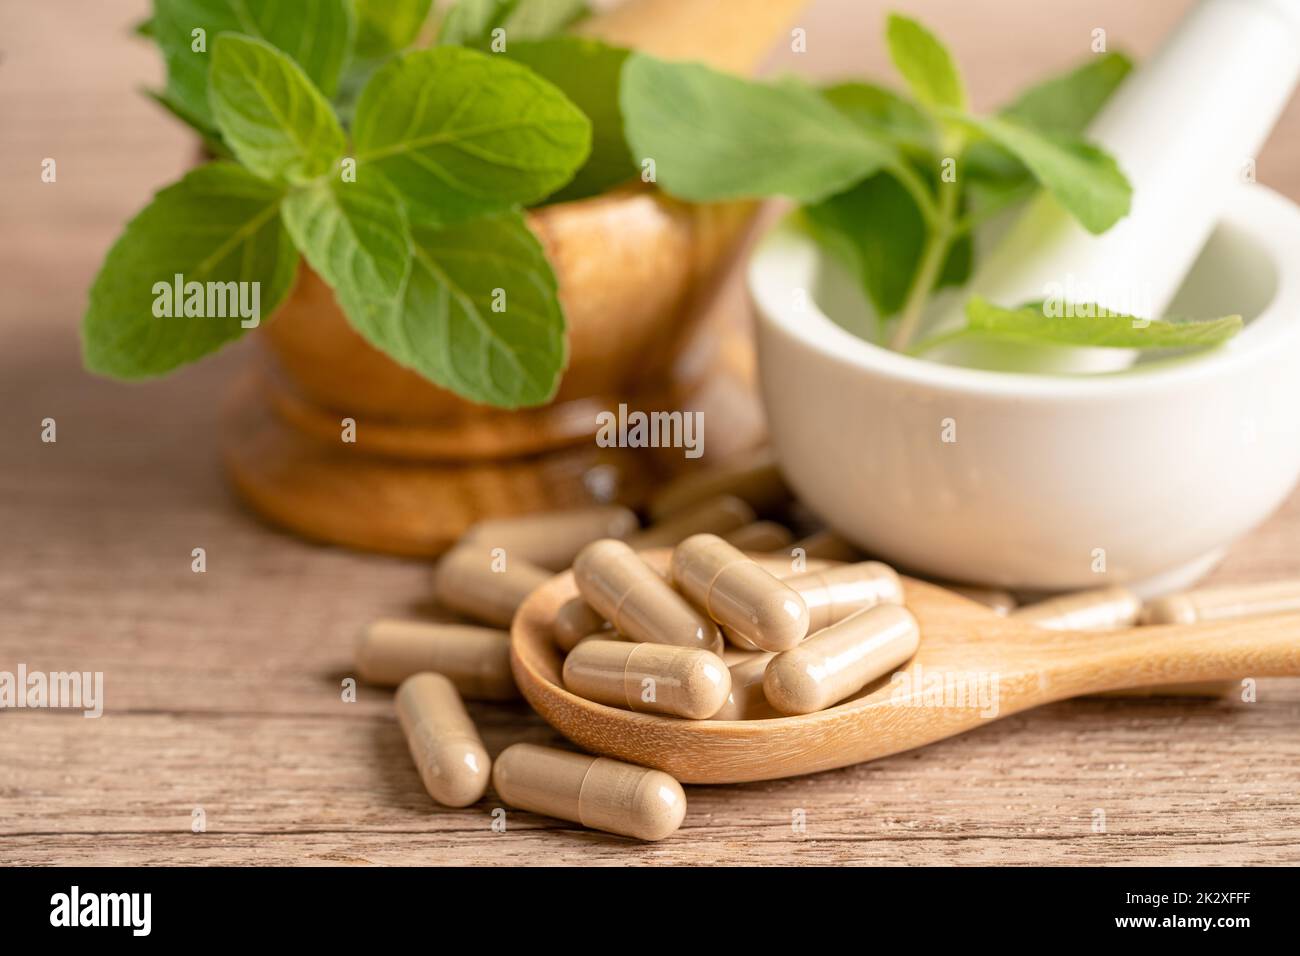 Alternative Medizin pflanzliche Bio-Kapsel mit Vitamin E Omega 3 Fischöl, Mineral, Medikament mit Kräutern Blatt natürliche Ergänzungen für ein gesundes gutes Leben. Stockfoto